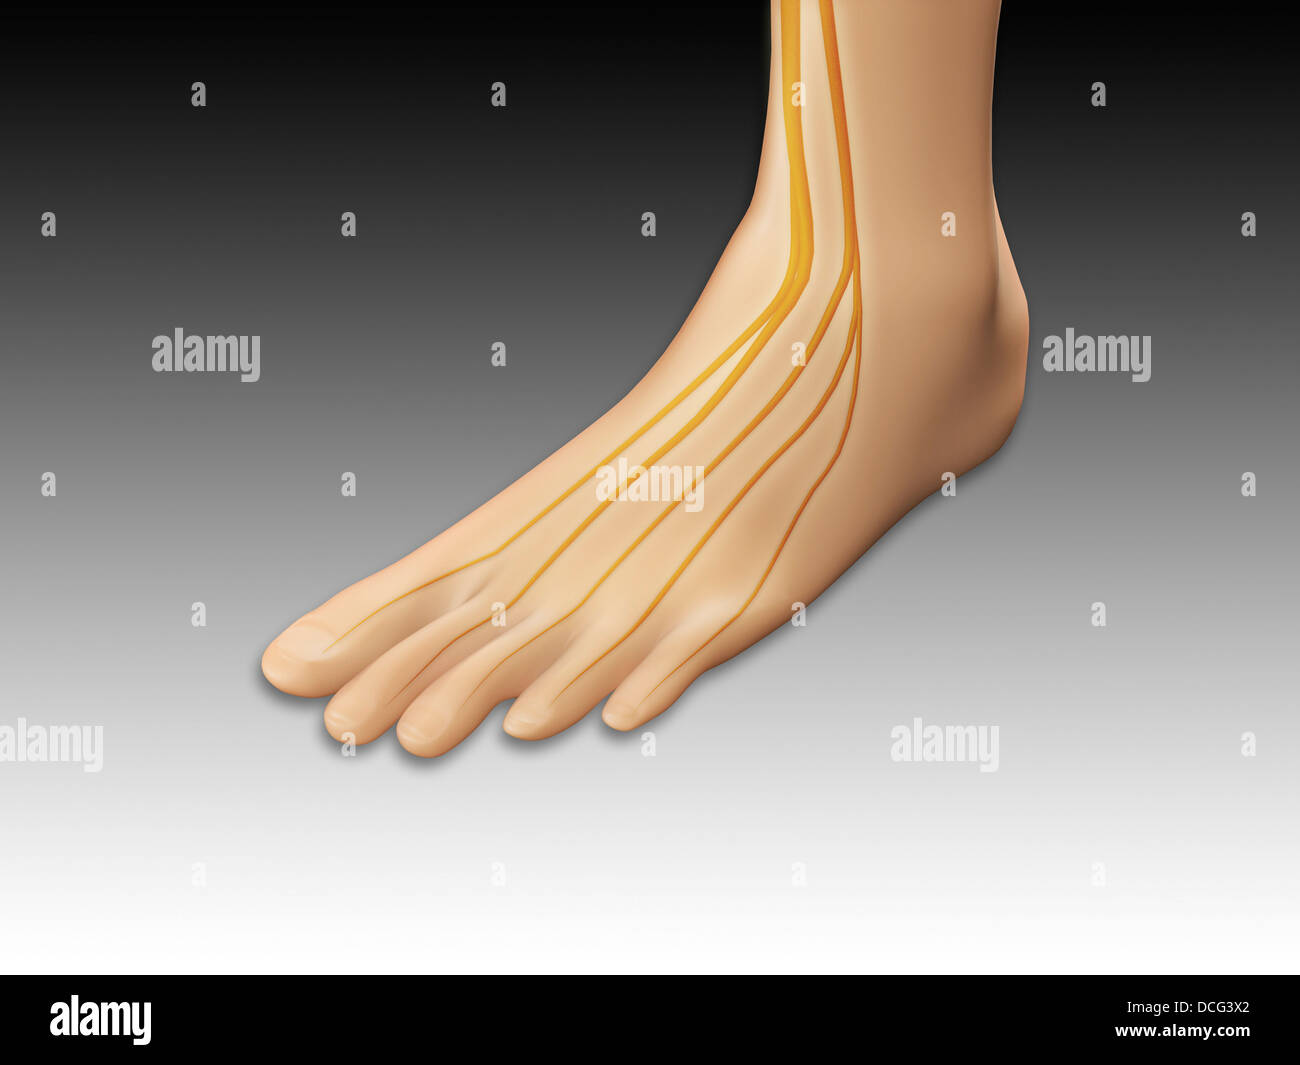 Immagine concettuale del piede umano con il sistema nervoso. Foto Stock